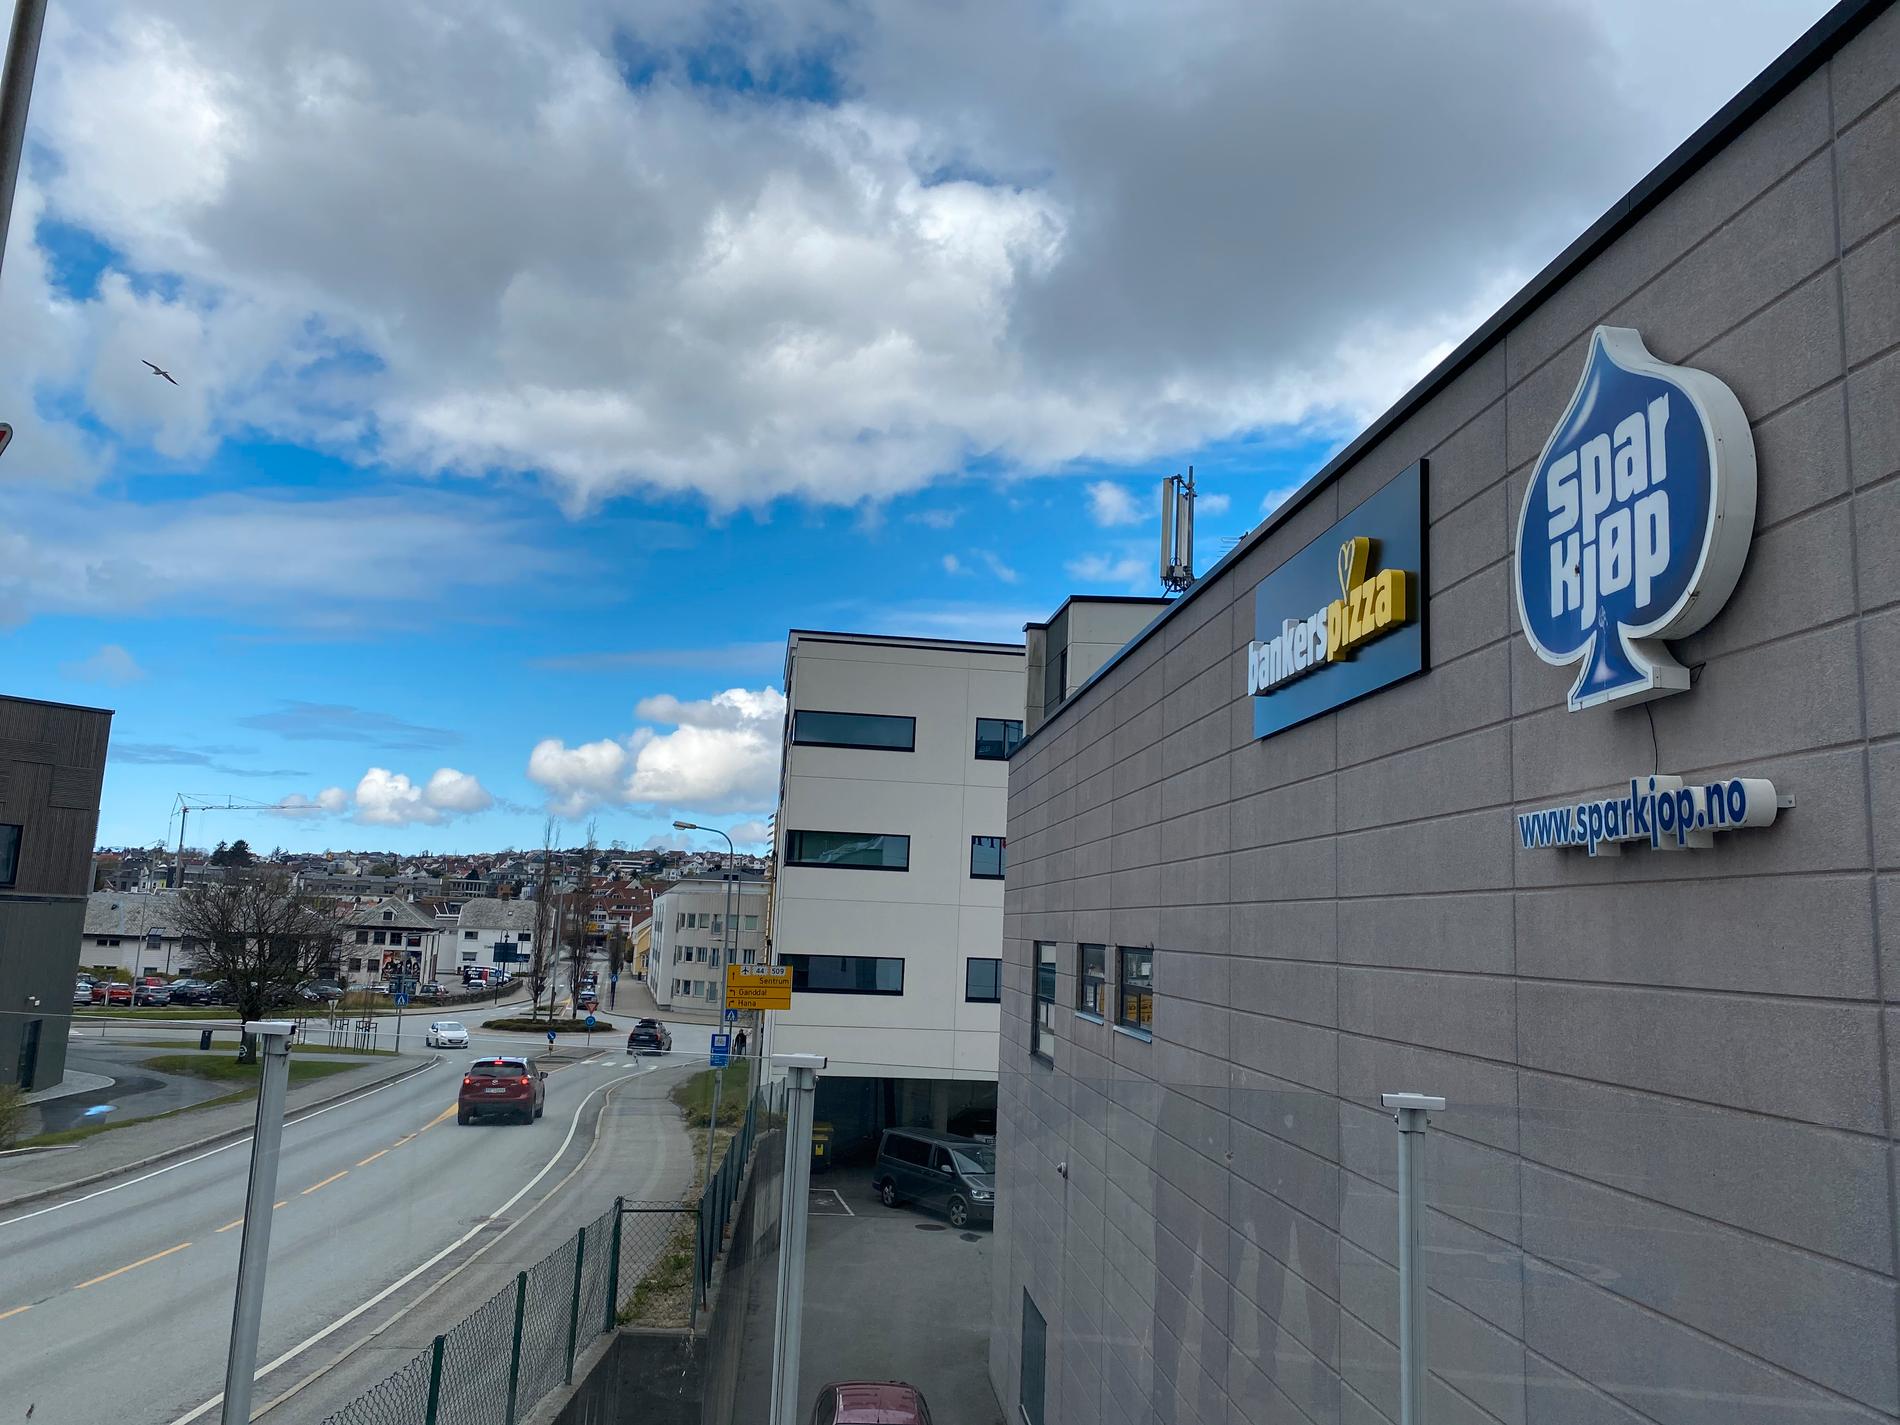 Bankers Pizza har åpnet i Gjesdalbakken, i samme bygg som Fretex og Spar Kjøp.